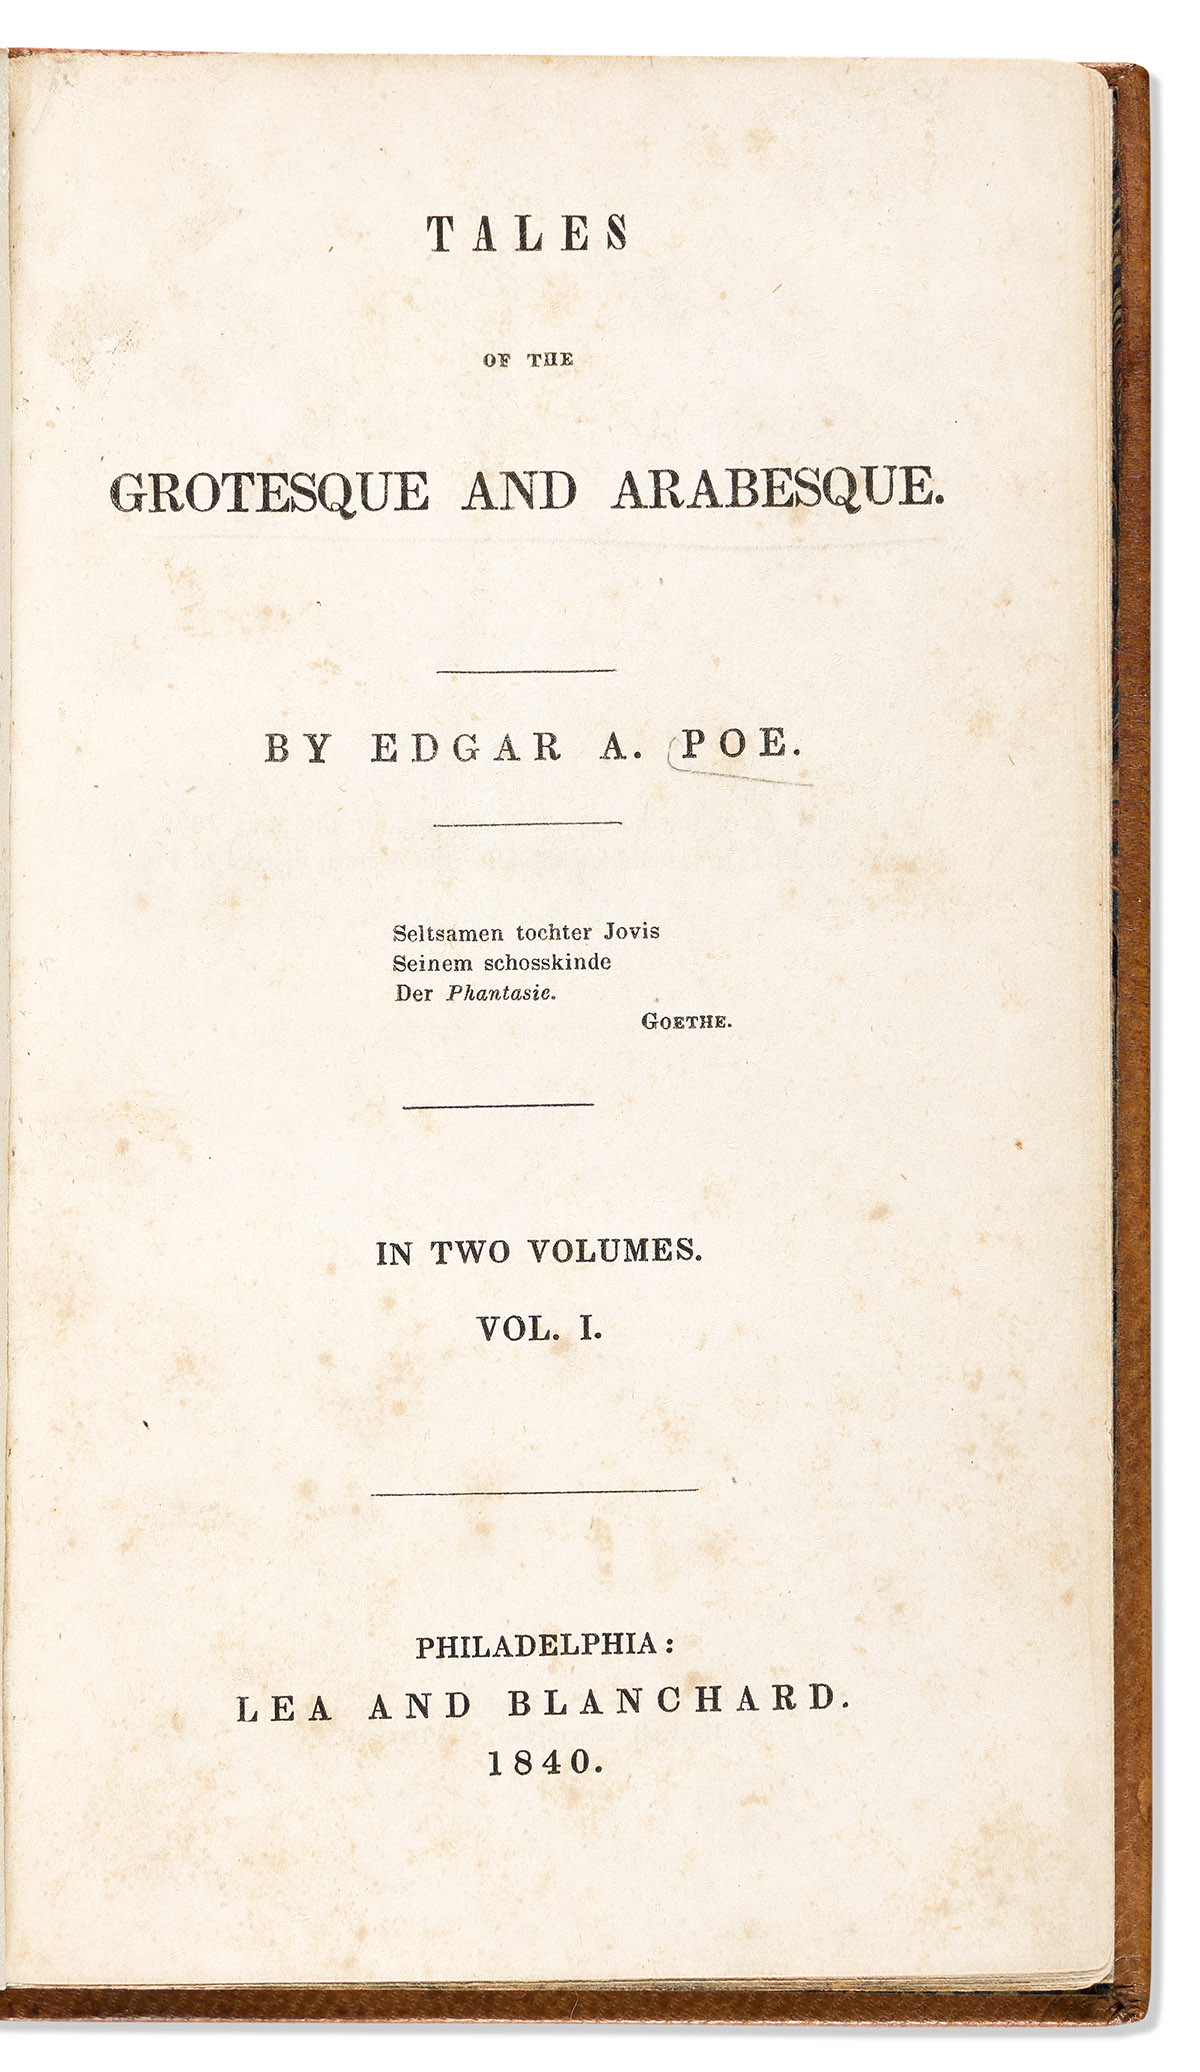 POE, EDGAR ALLAN. Tales of the Grotesque and Arabesque.